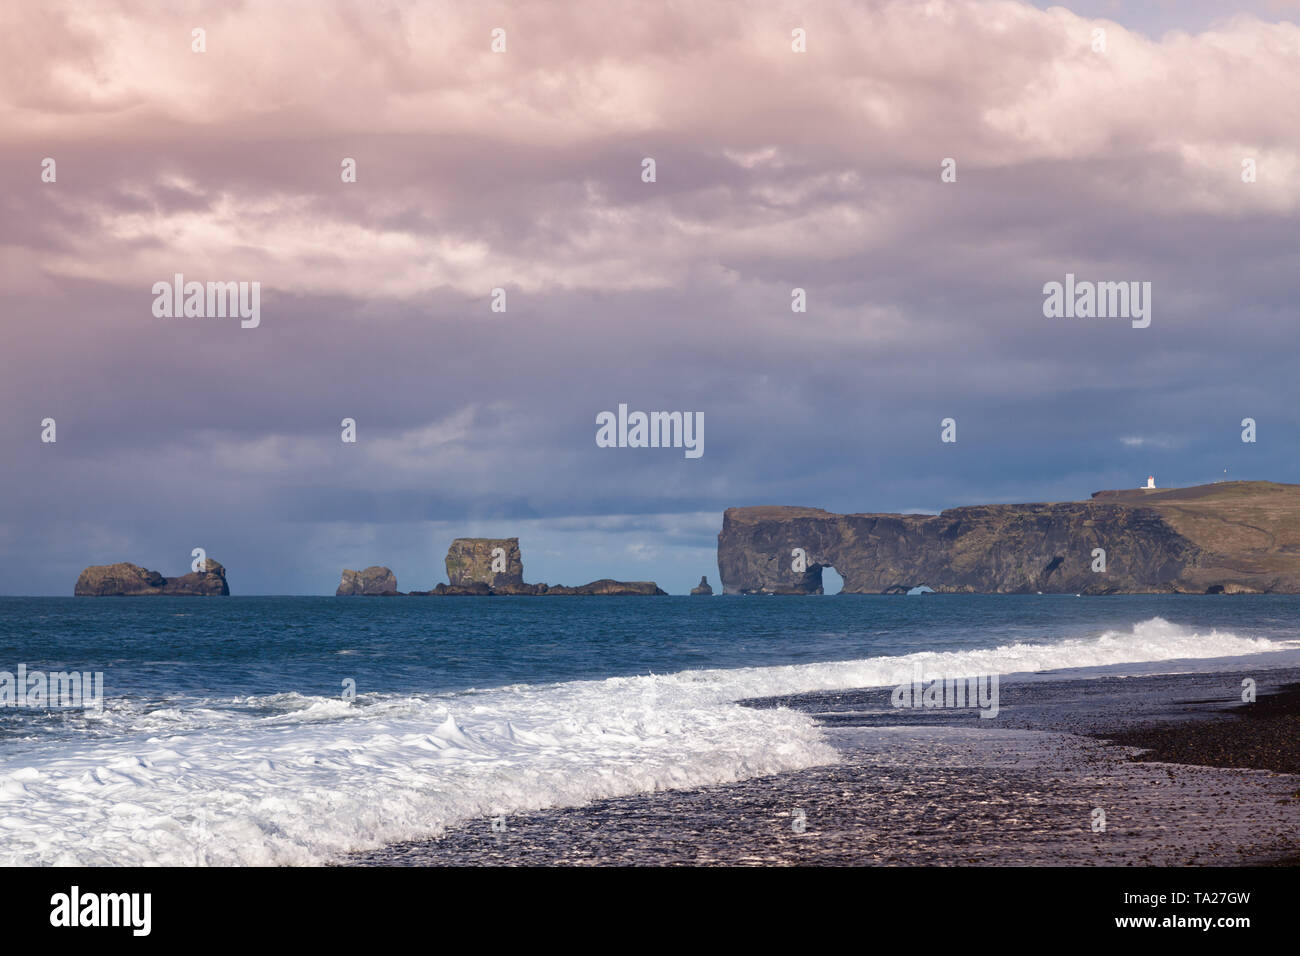 Iceland dramatic coastline Stock Photo